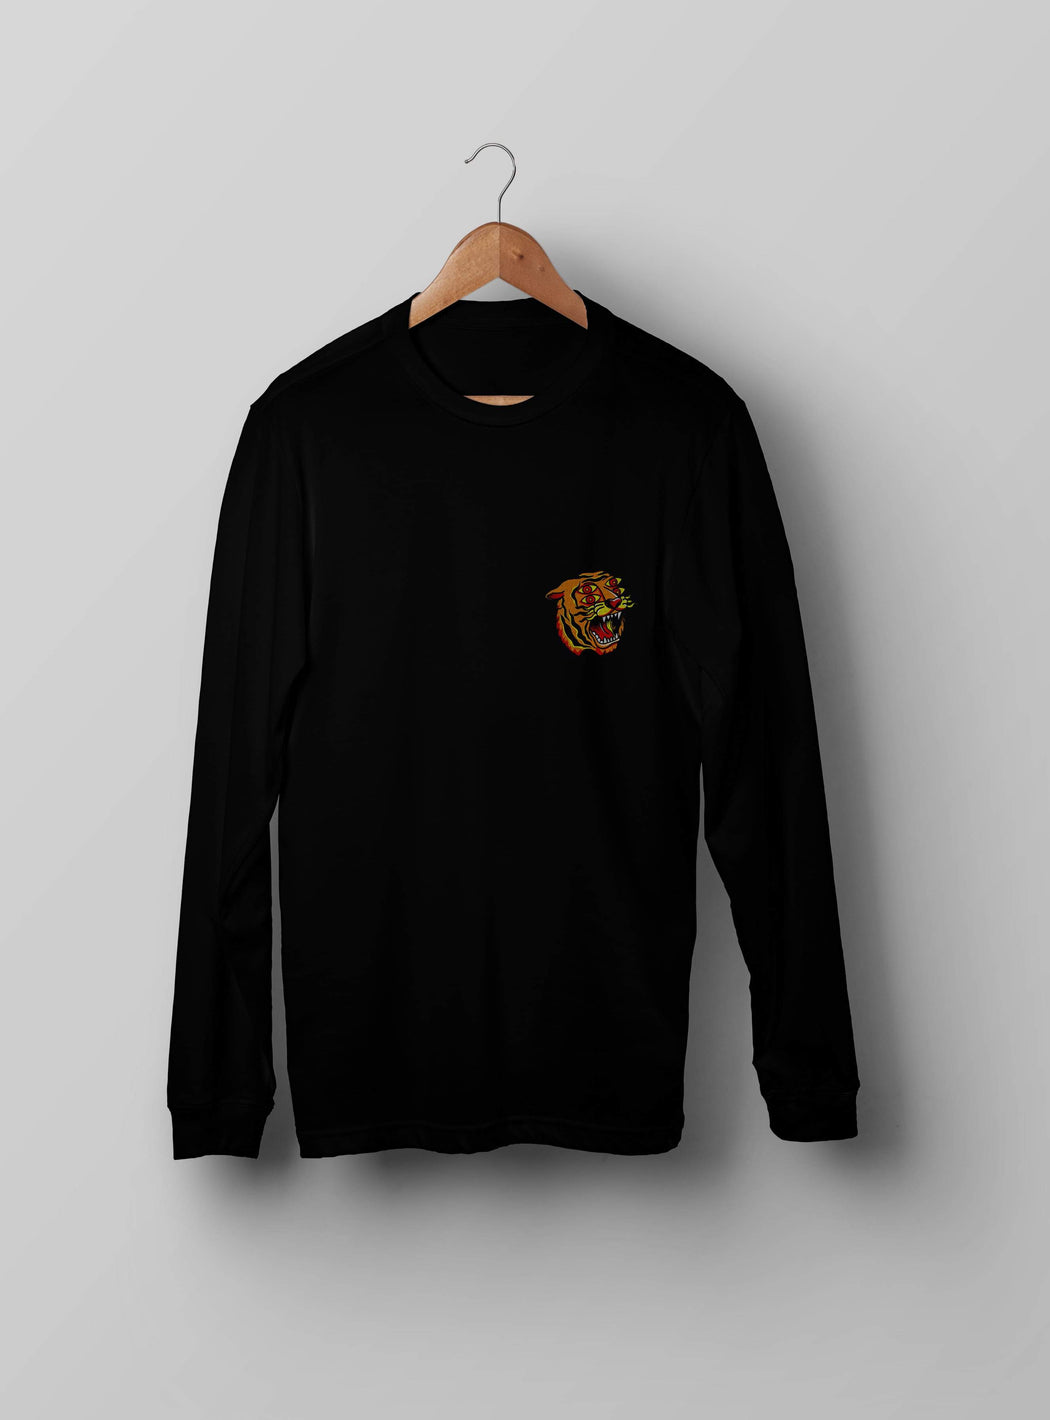 4 Eyes Tiger Black Sweatshirt - Kustom: Tees Factory